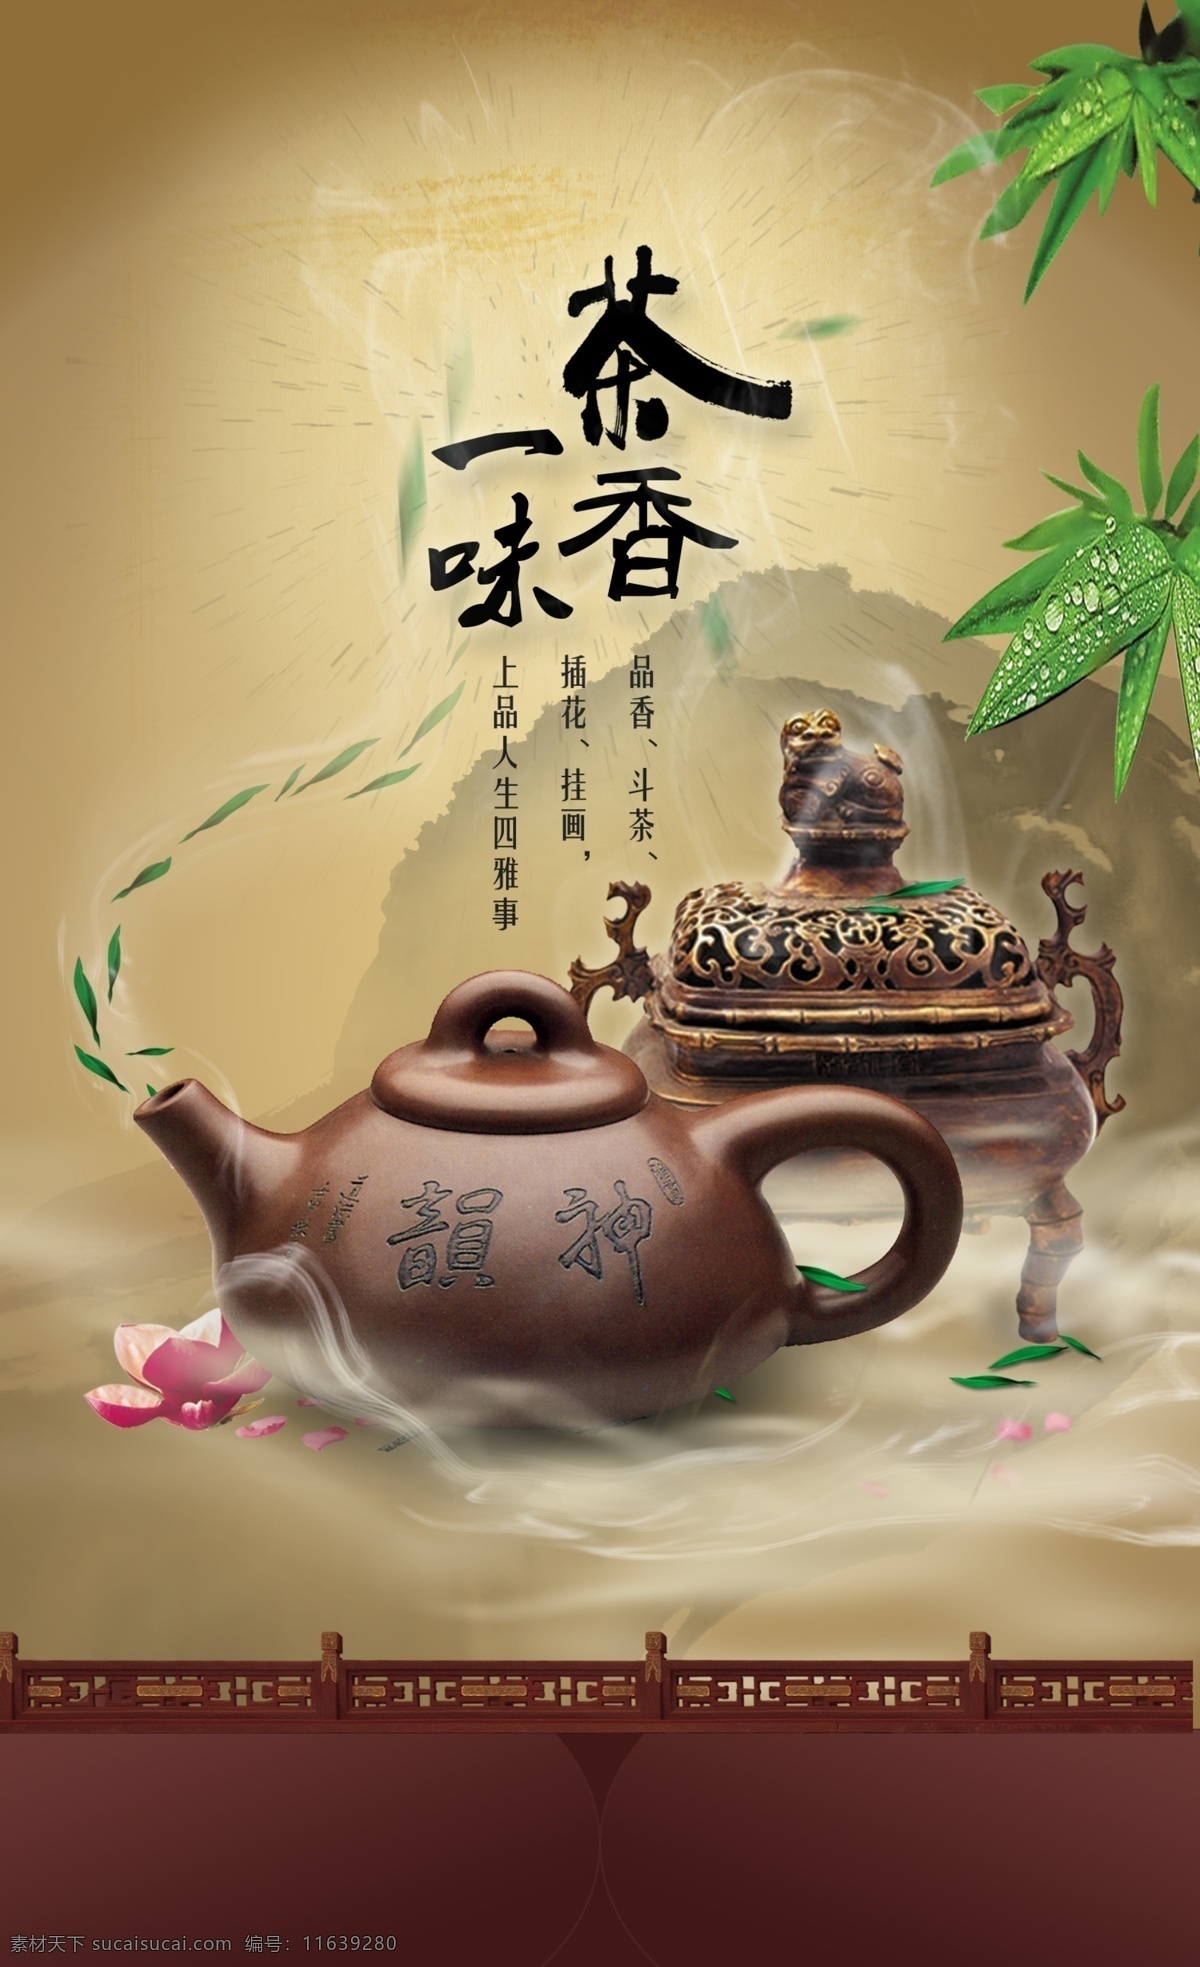 茶叶 茶叶海报 茶壶 香炉 中国风 水墨 竹叶 psd素材 红色